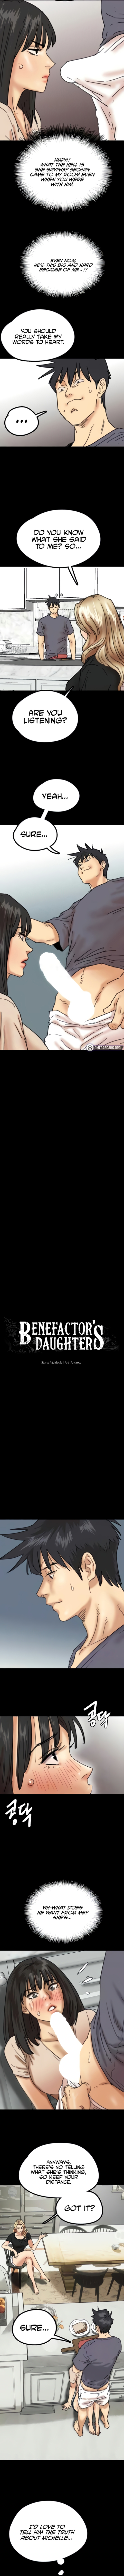 Benefactor’s Daughters NEW image